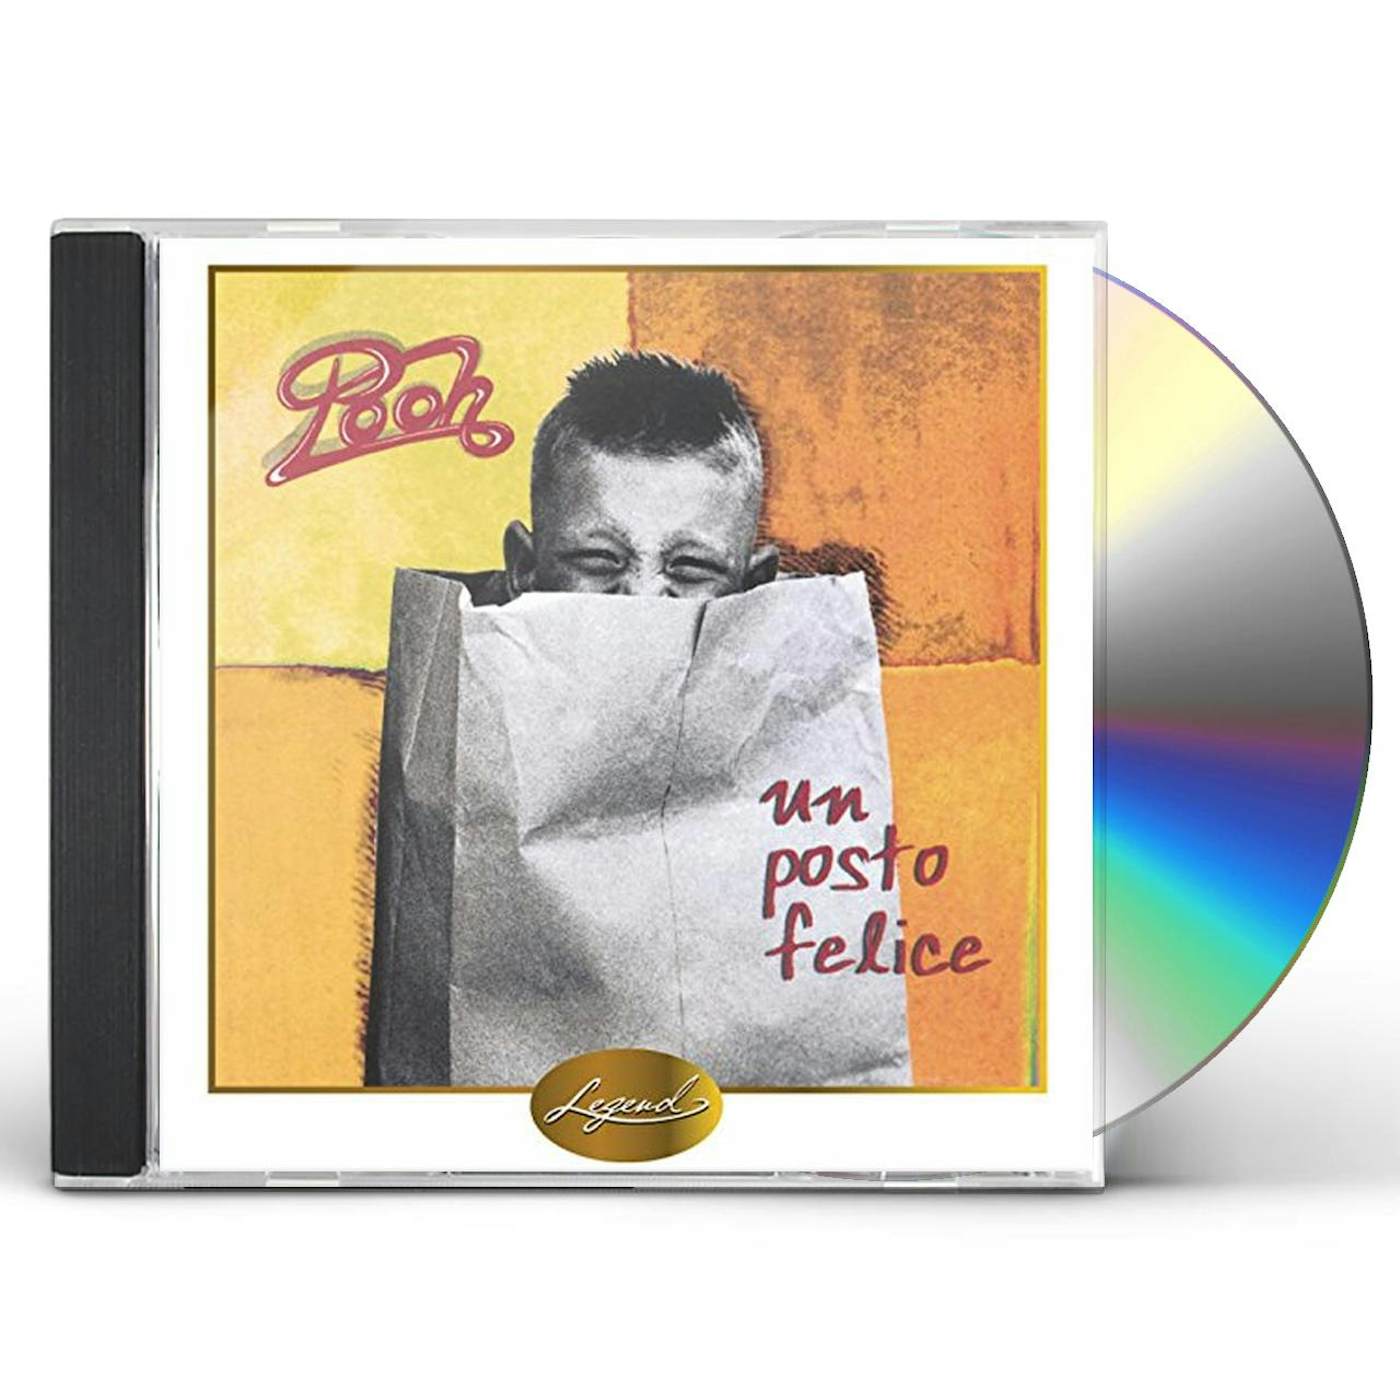 Pooh UN POSTO FELICE CD